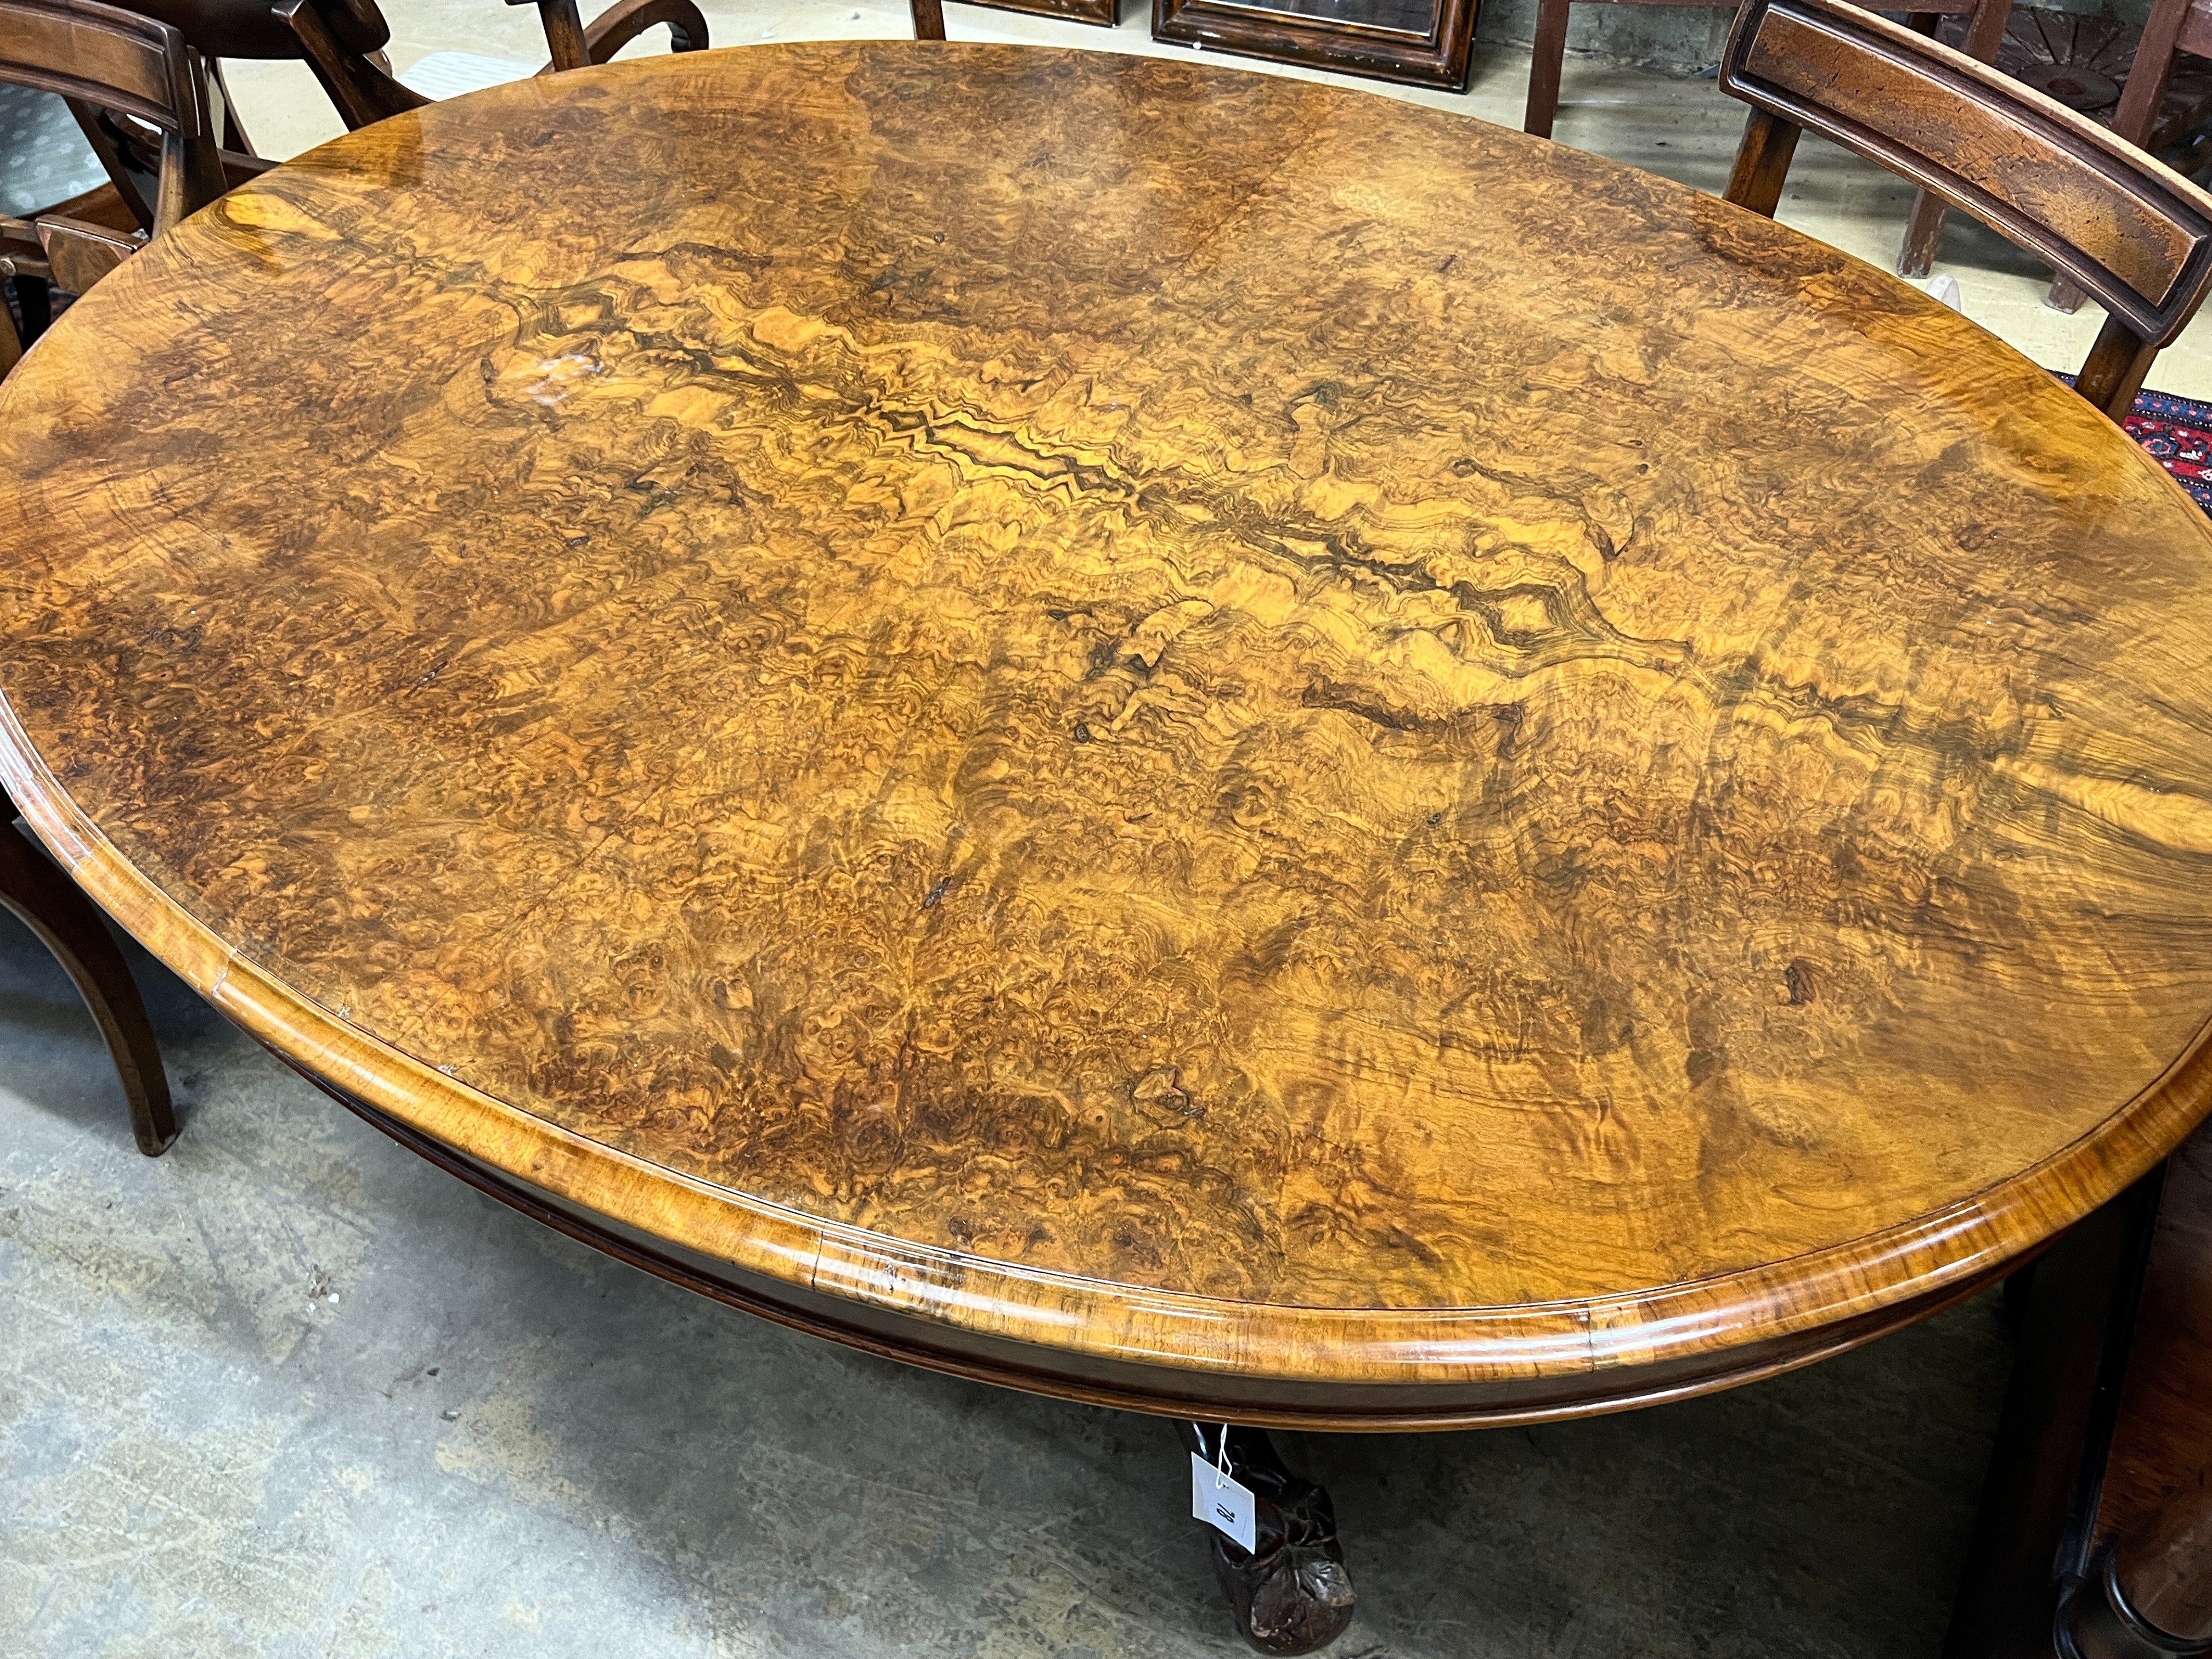 A Victorian oval burr walnut loo table, length 150cm, width 109cm, height 71cm